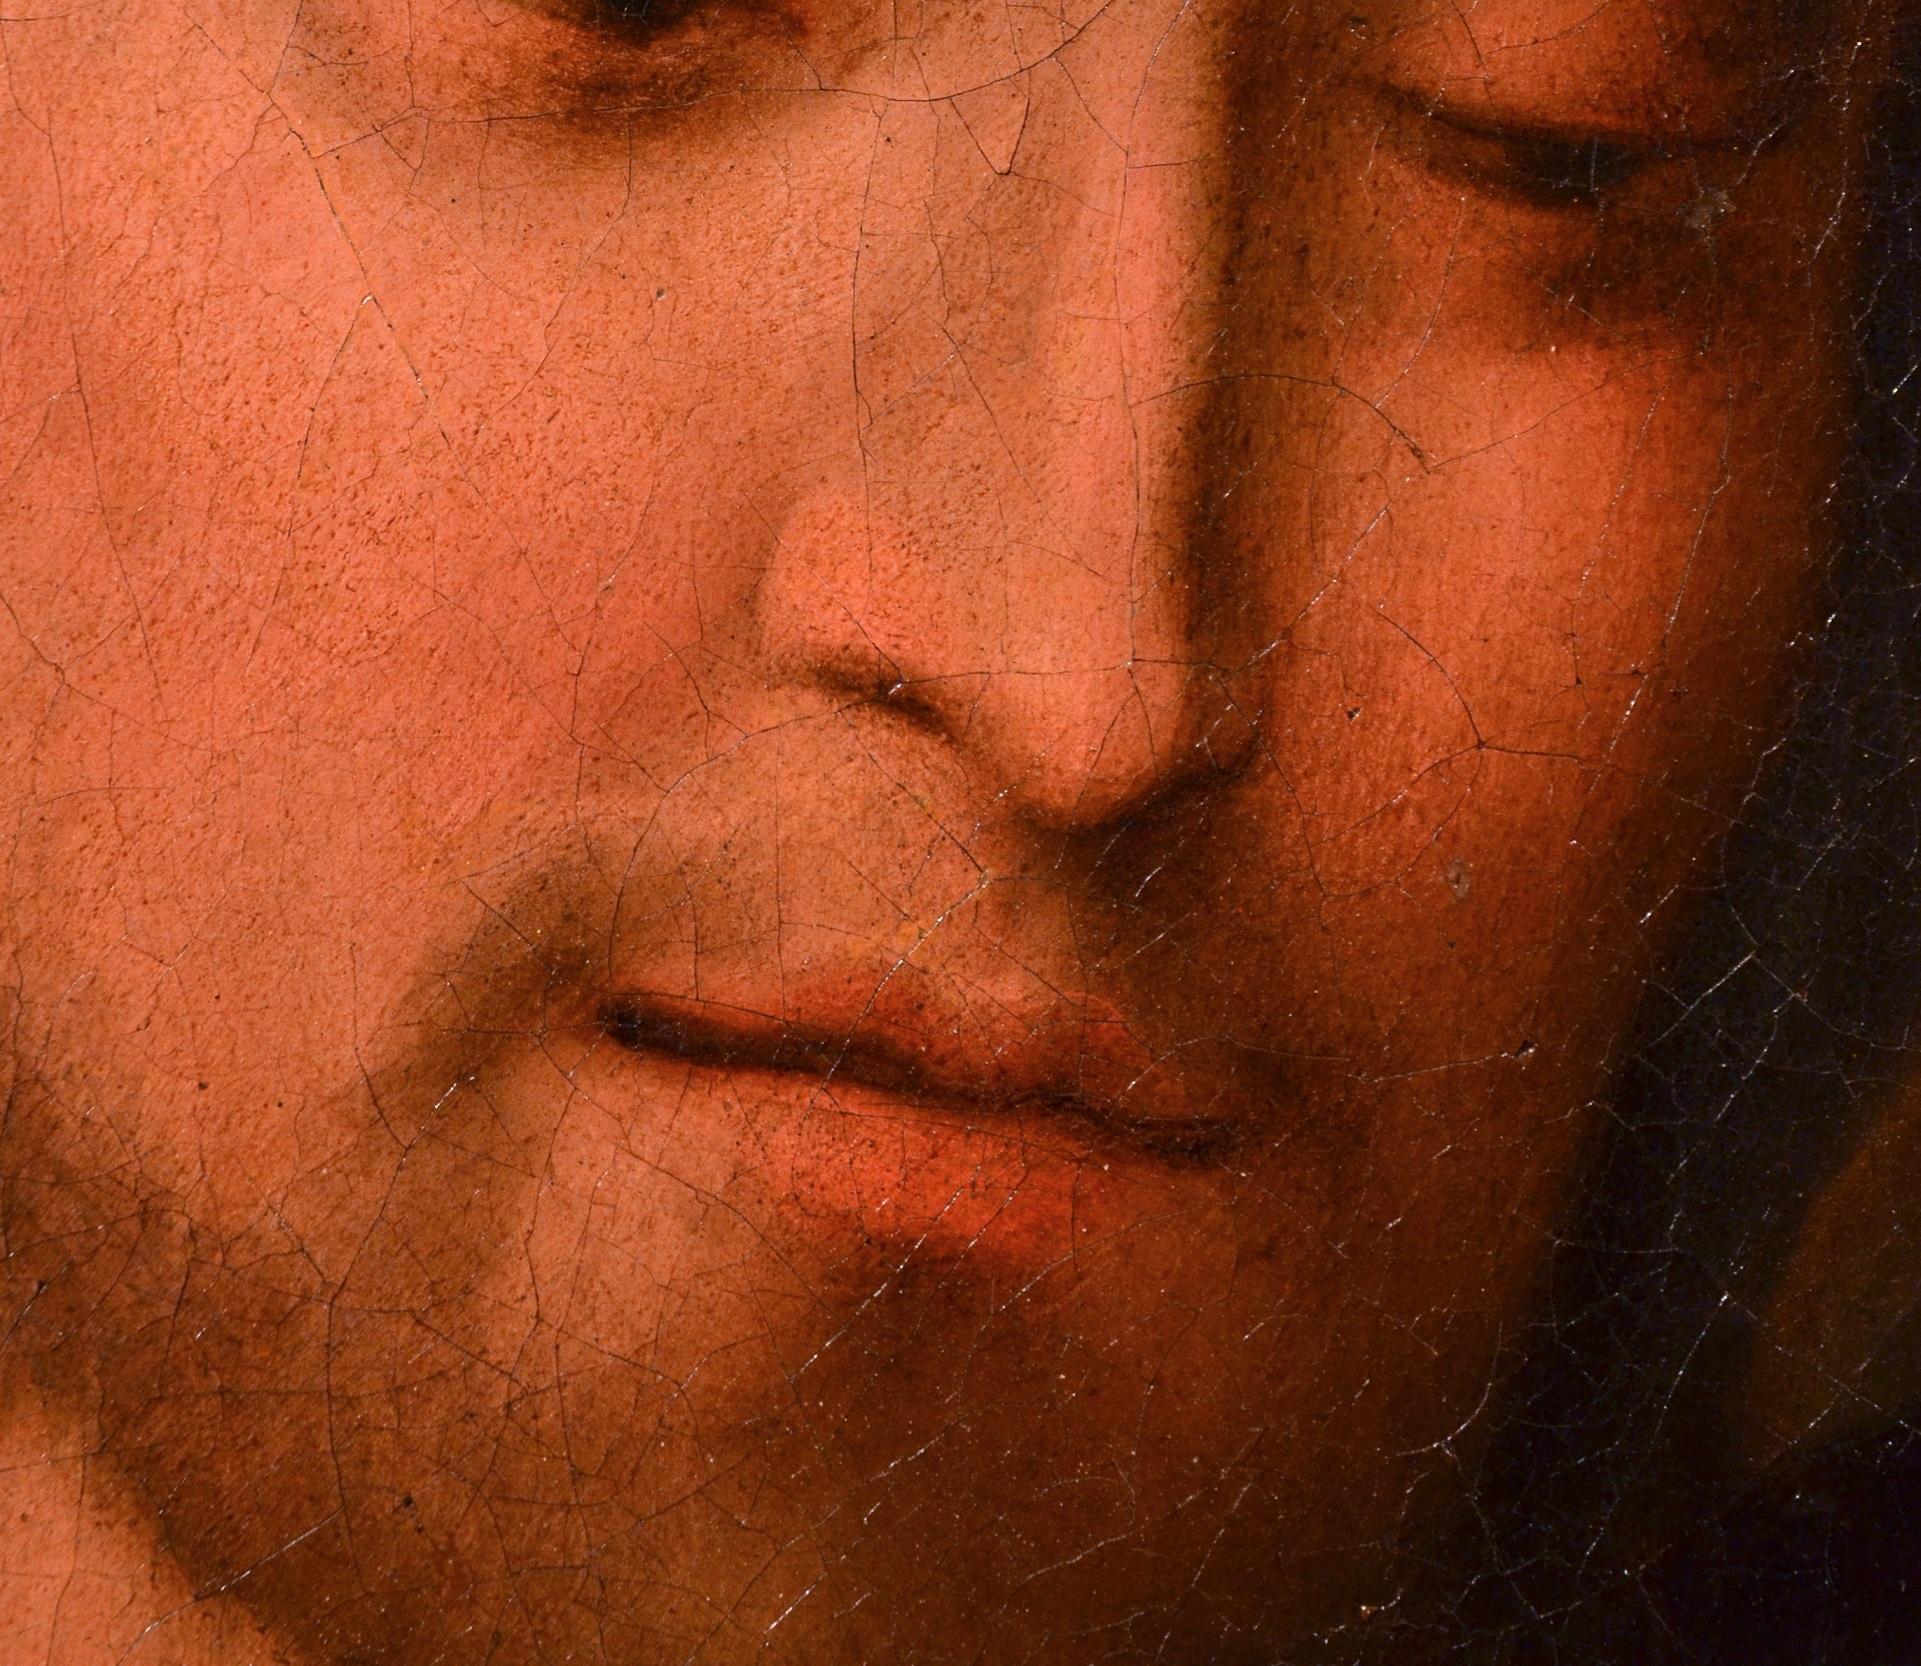 Salvator Mundi 17th Century Leonardo Italy Old master Paint Oil on canvas art 5